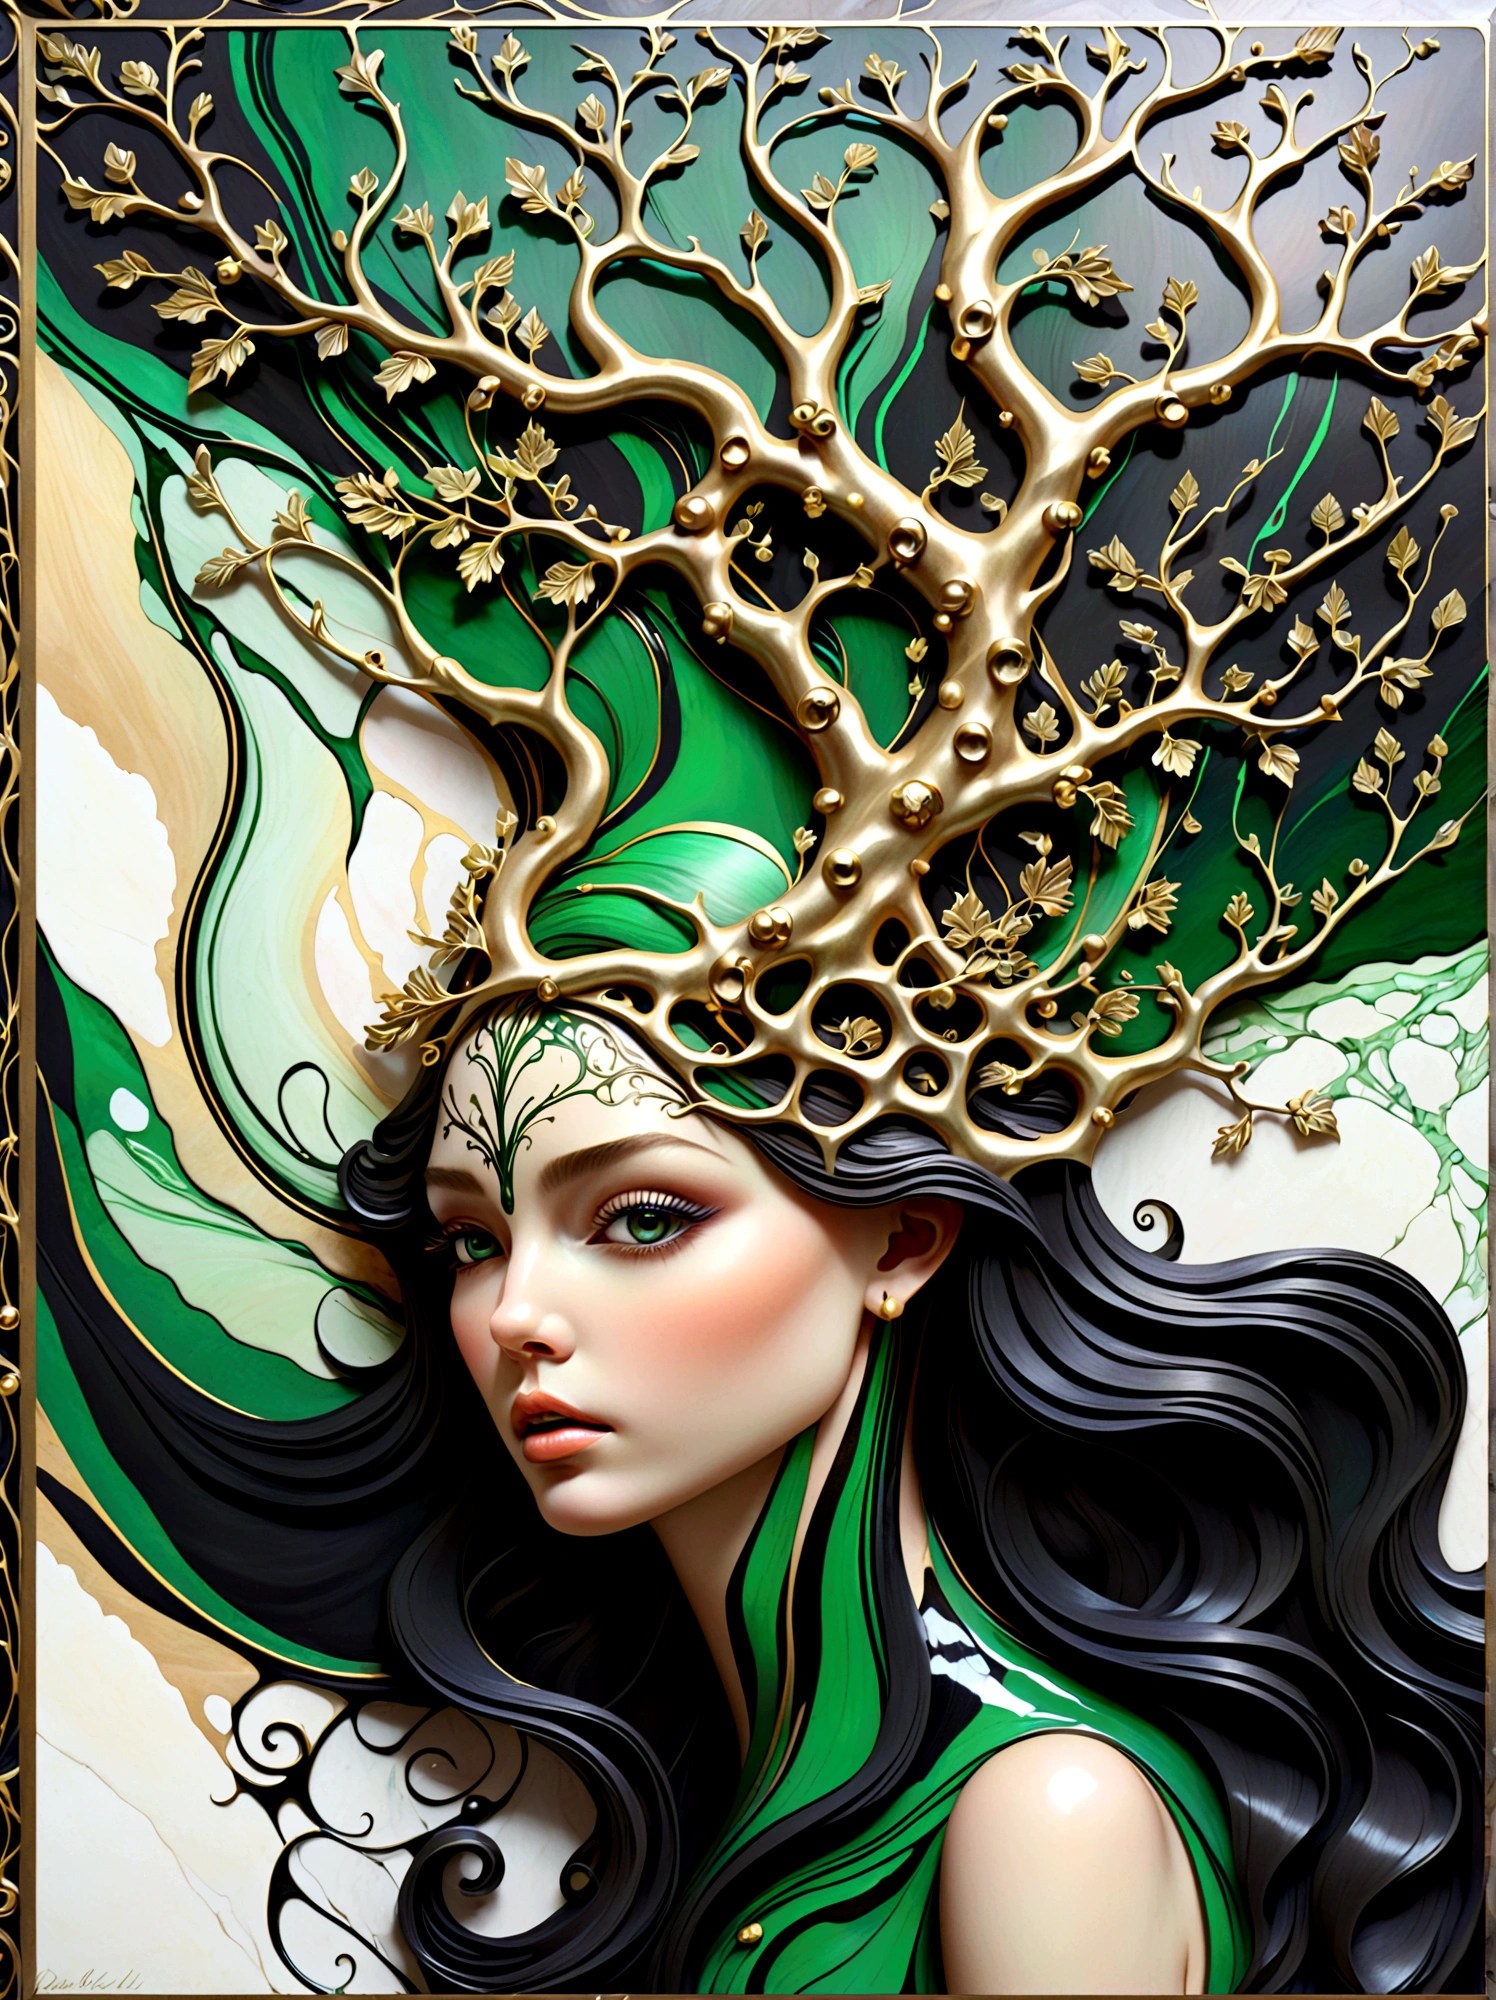 красивый портрет феи с древом жизни, вытекающим из ее головы в абстрактной мраморной текстуре, с цветами черного обсидиана, Блестящее золото, и изумрудно-зеленый, очень подробный, сложный дизайн, от Анны Башелье,